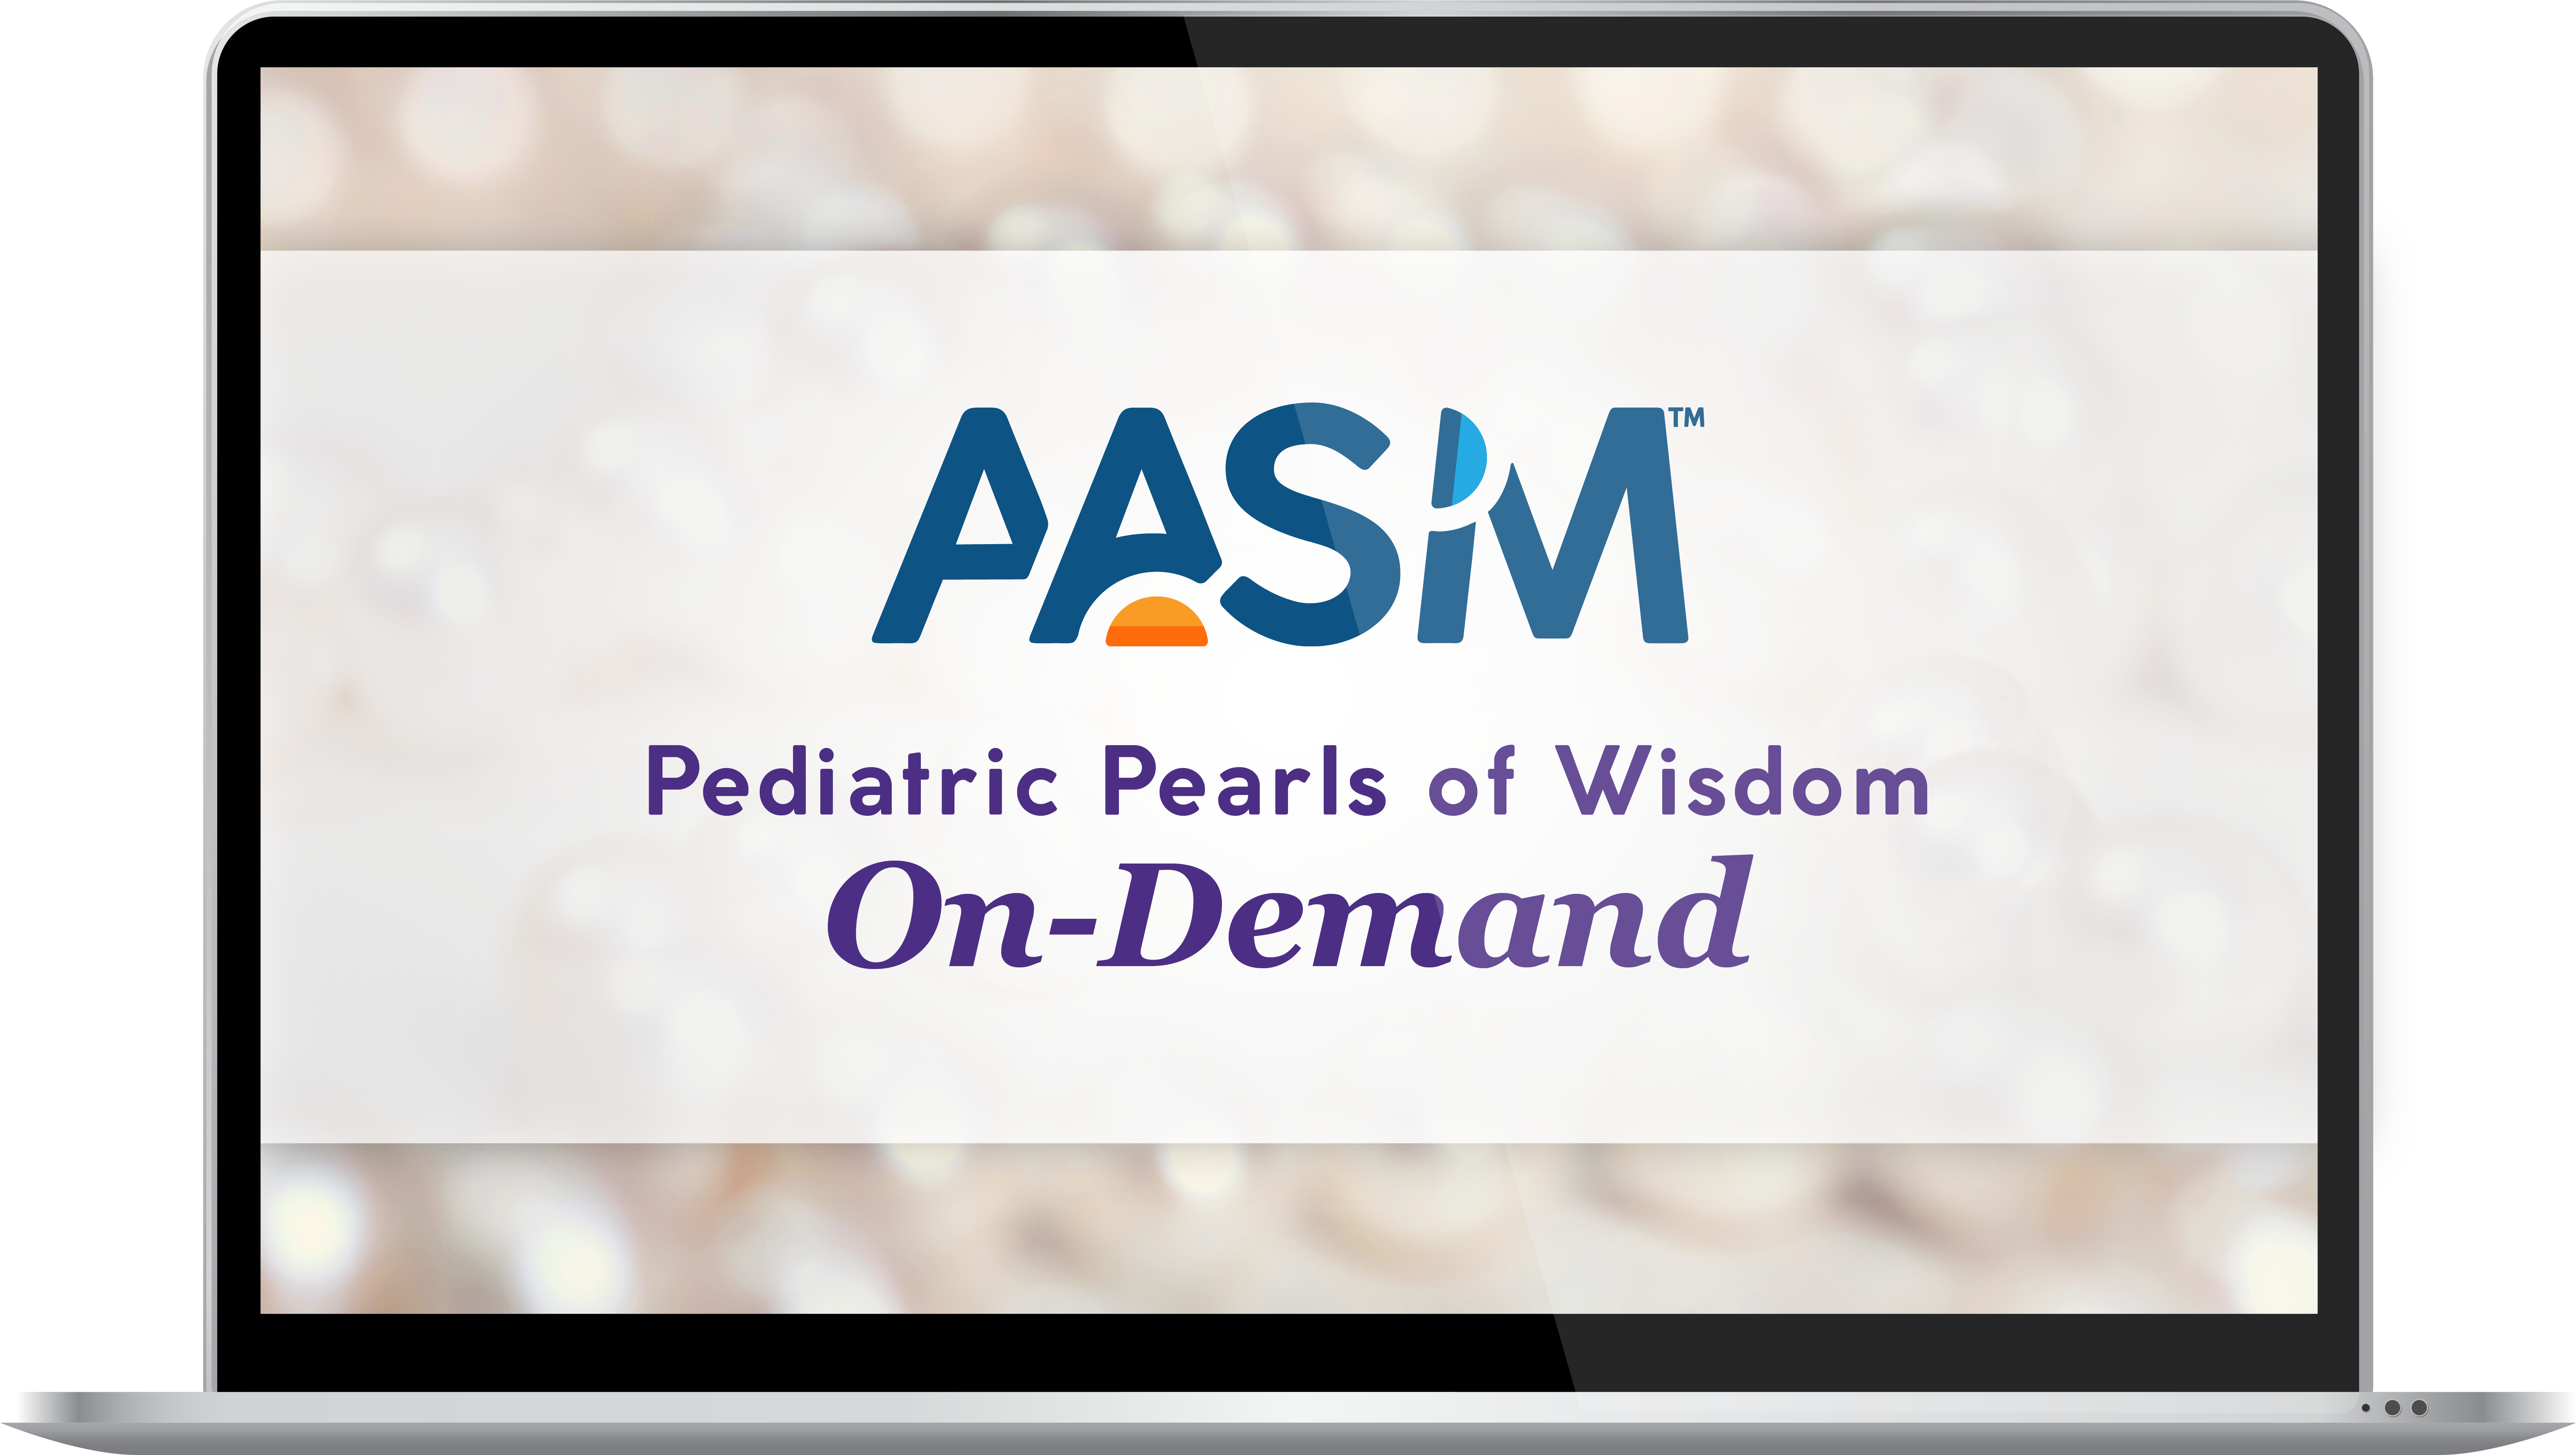 Pediatric Pearls of Wisdom